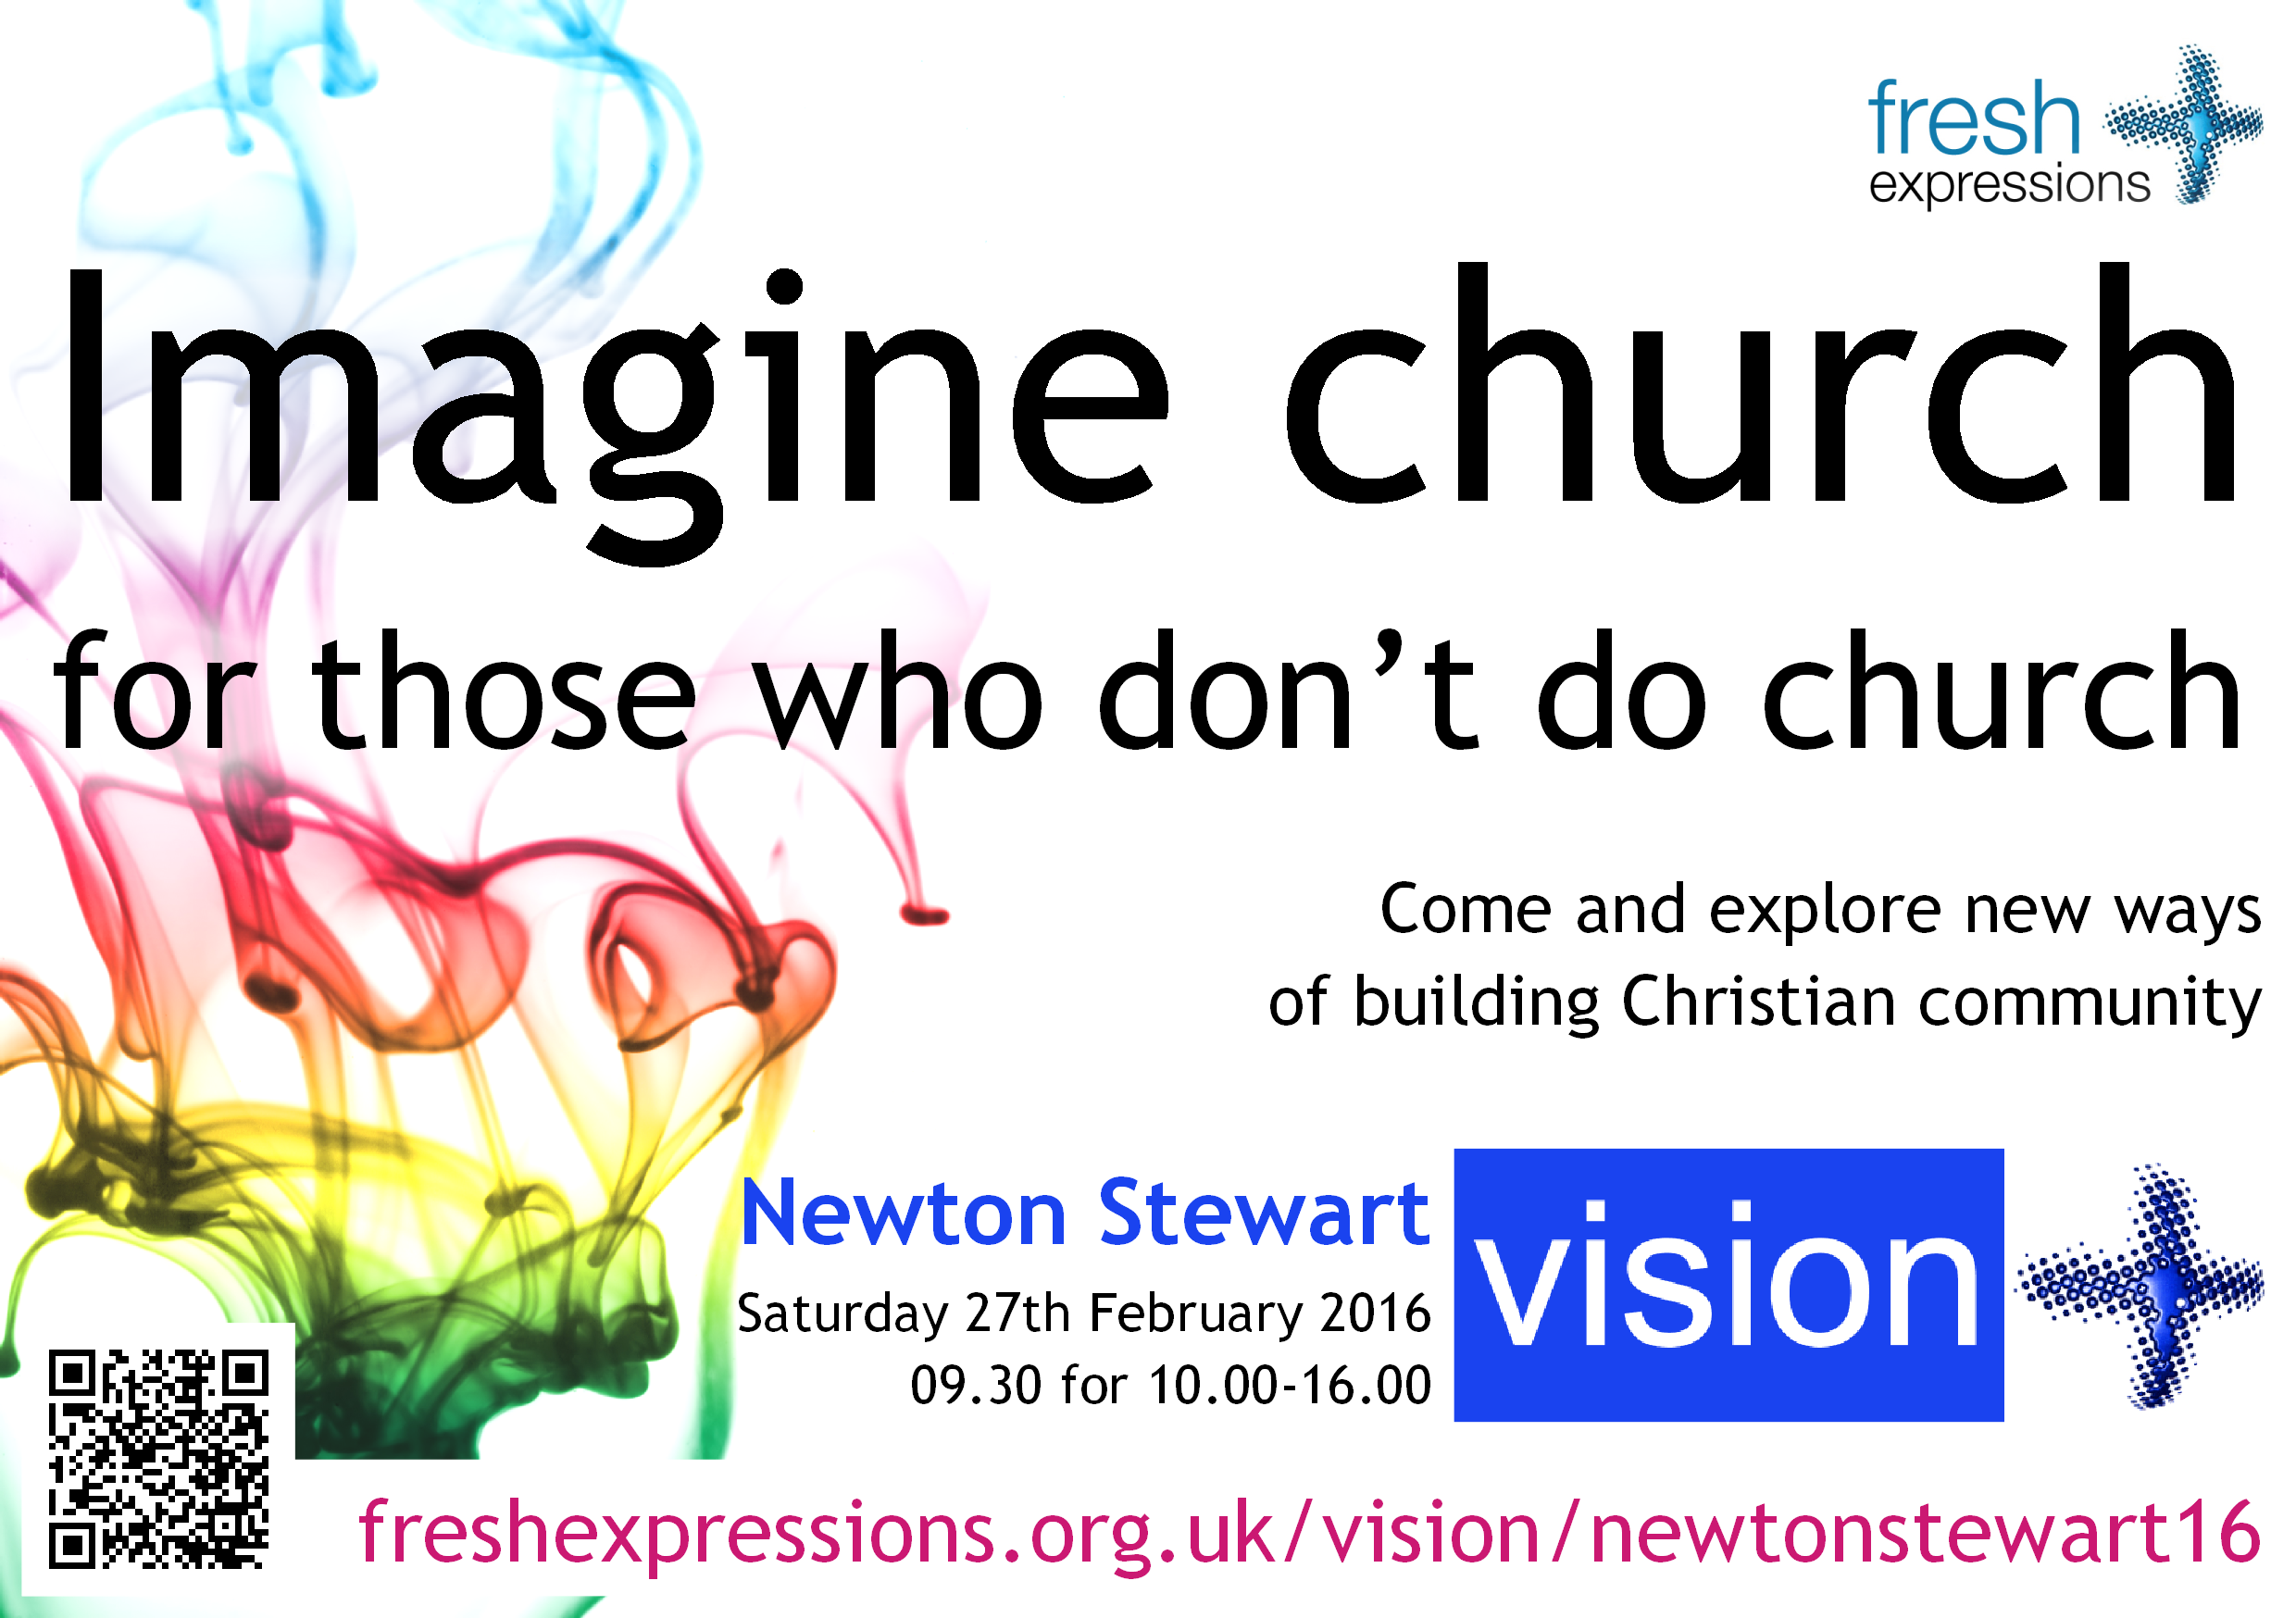 Newton Stewart vision event